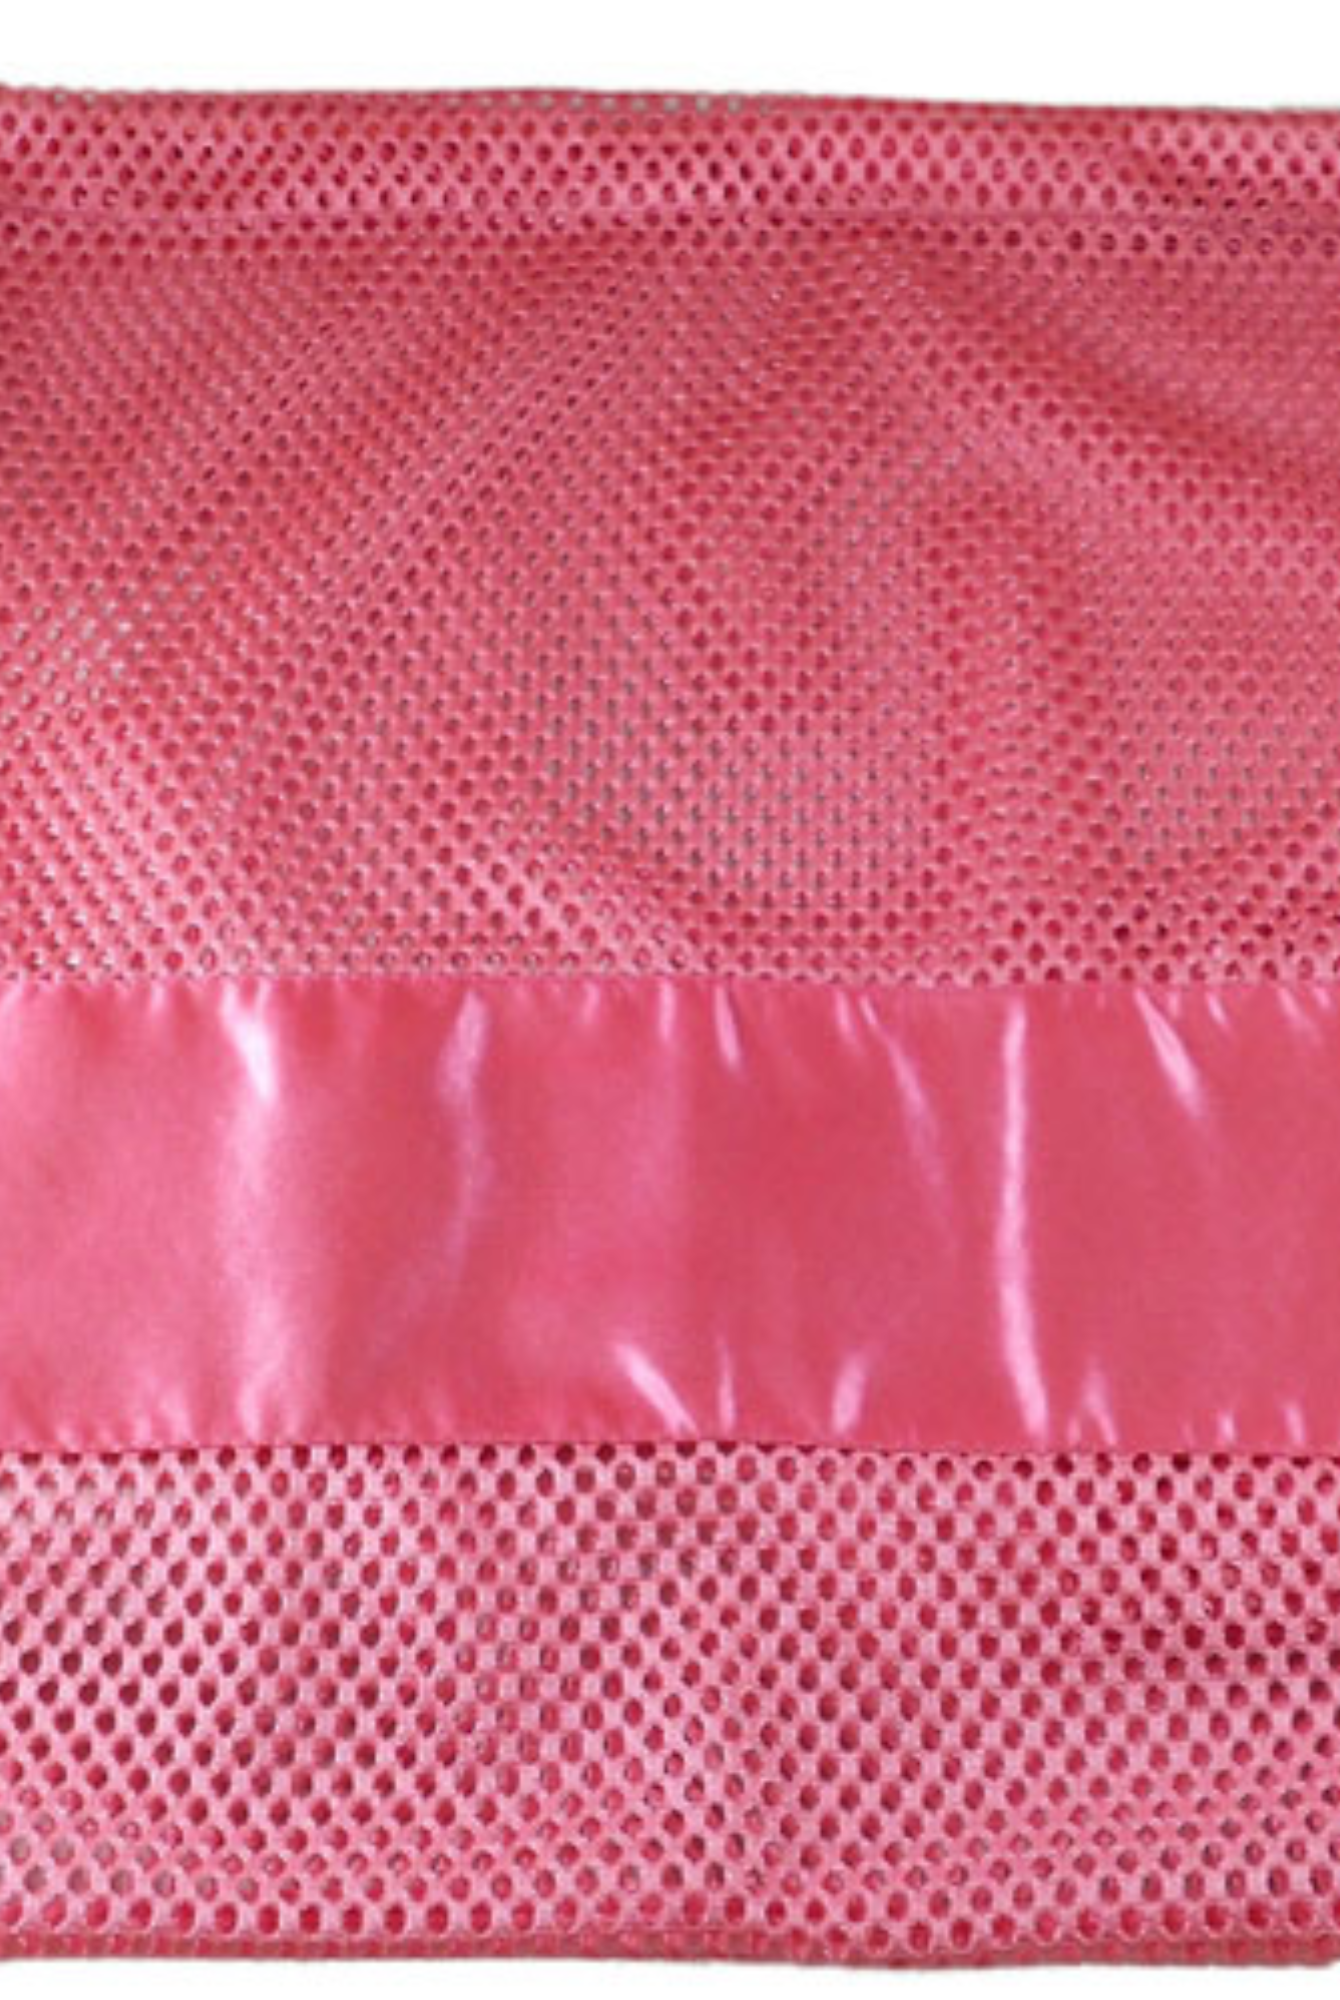 Large Nylon Mesh drawstring Pointe Bag Pillowcase Dark Pink